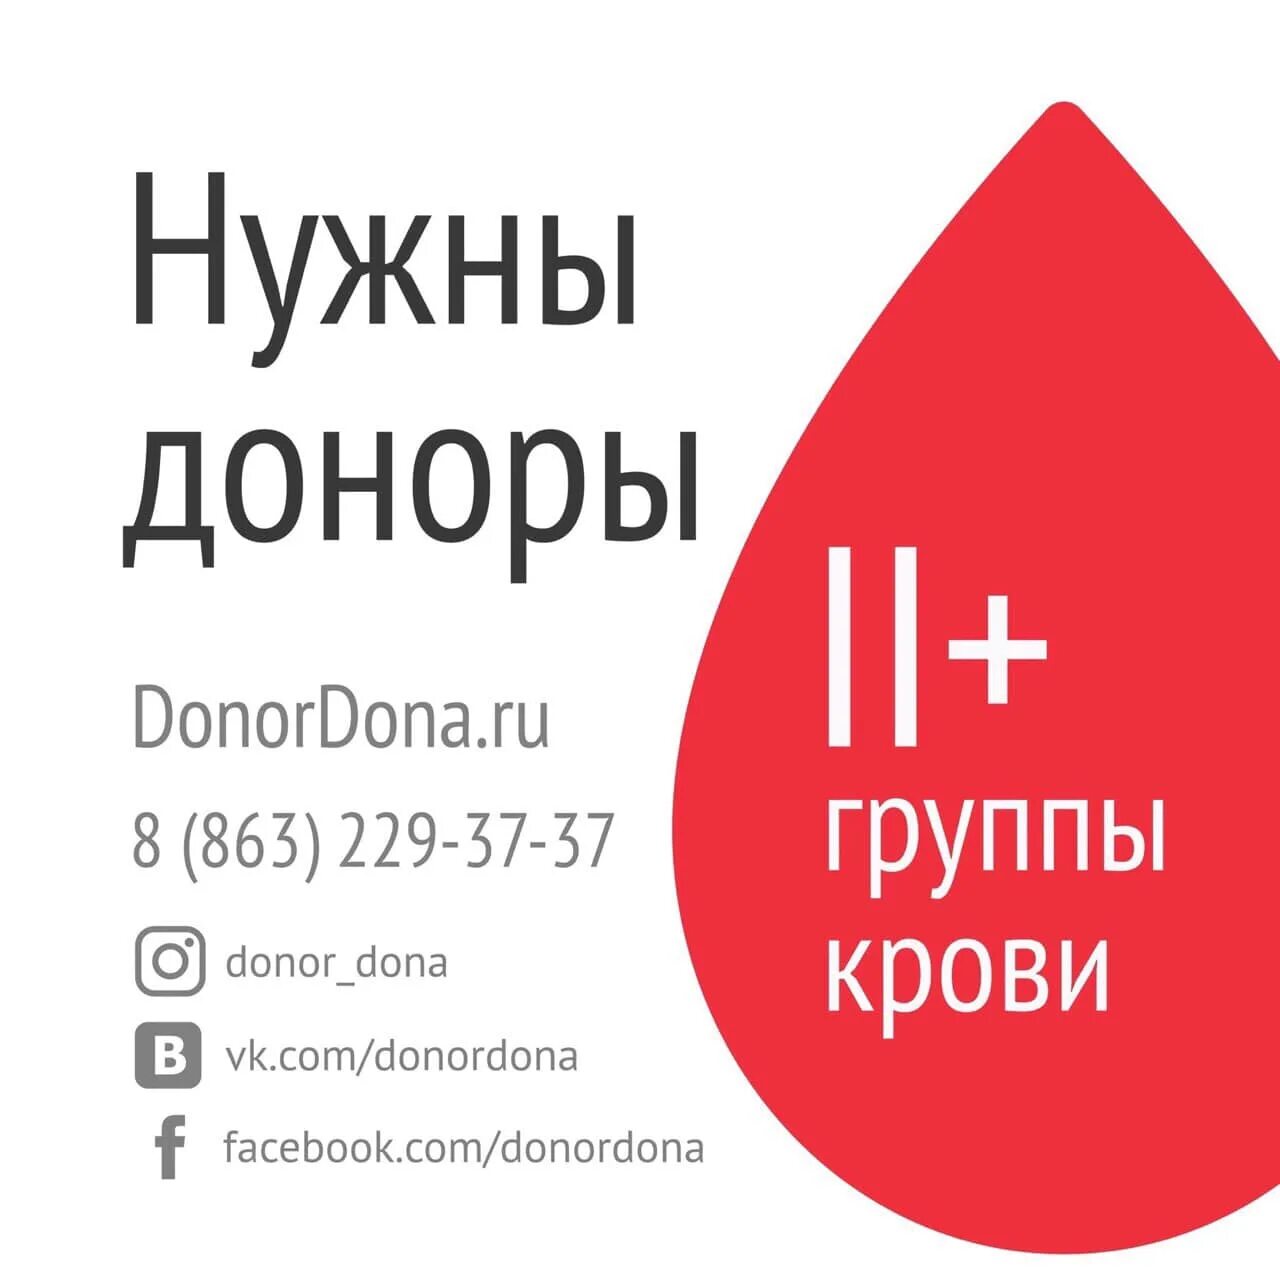 Донорство крови ростов на дону